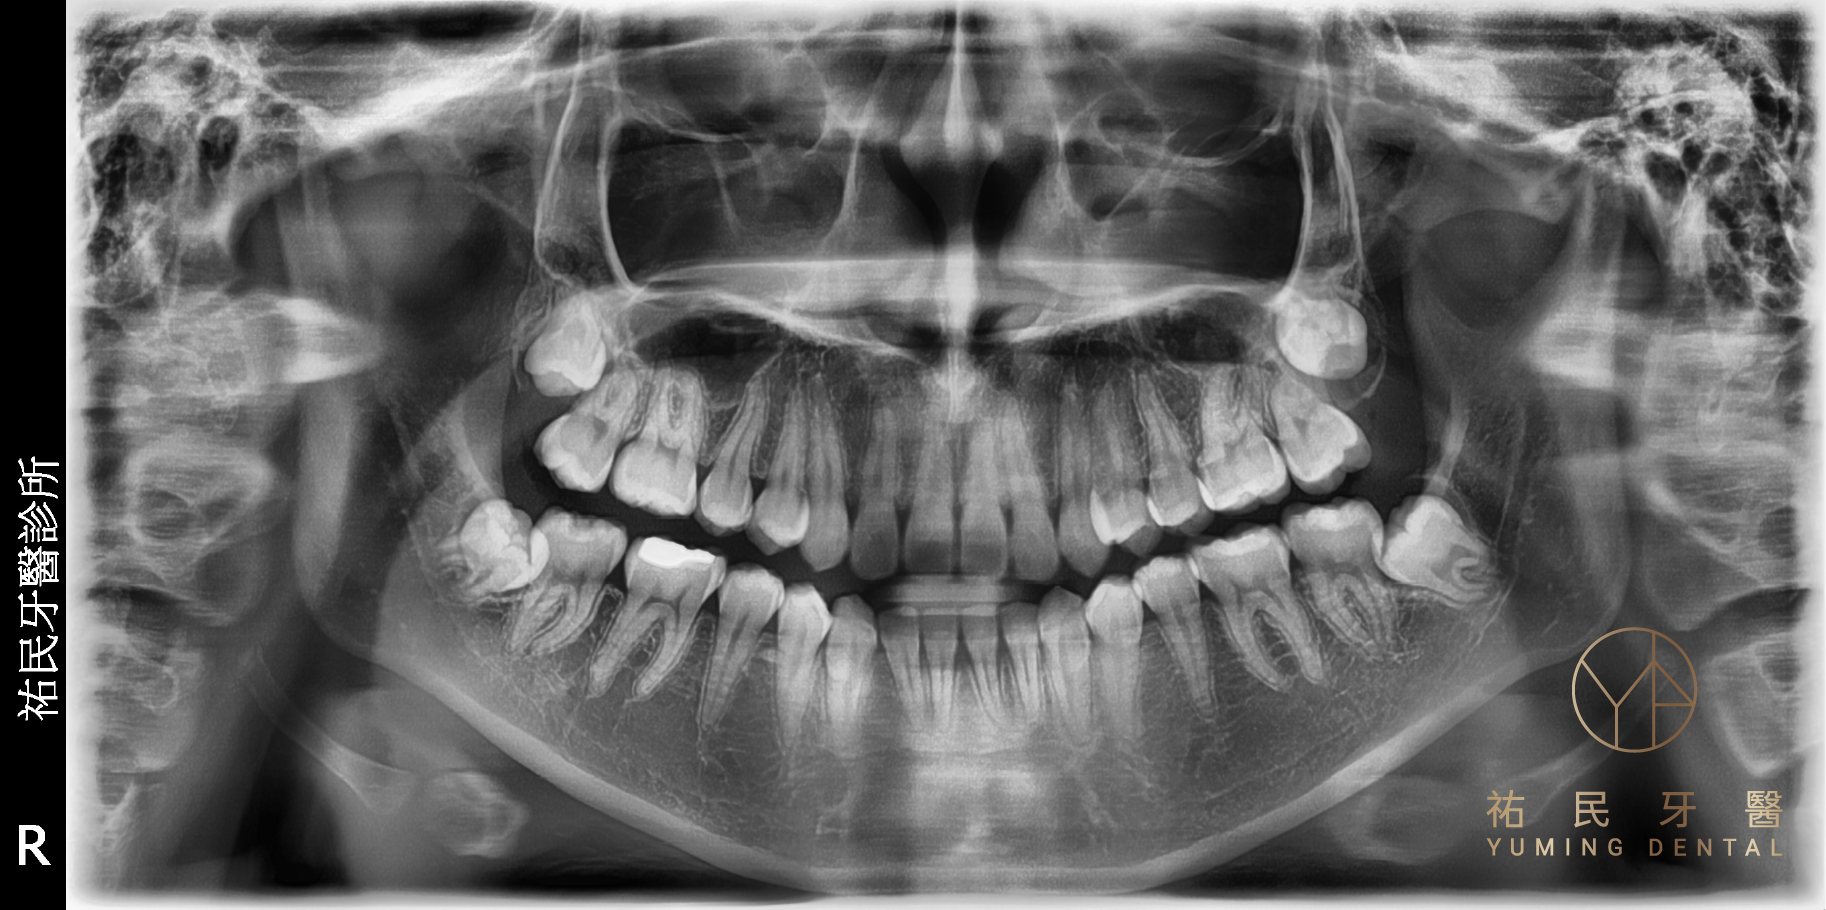 究竟智齒一定要拔嗎？主要會由醫師判斷，可透過拍攝牙齒X光片近一步了解牙齒狀況